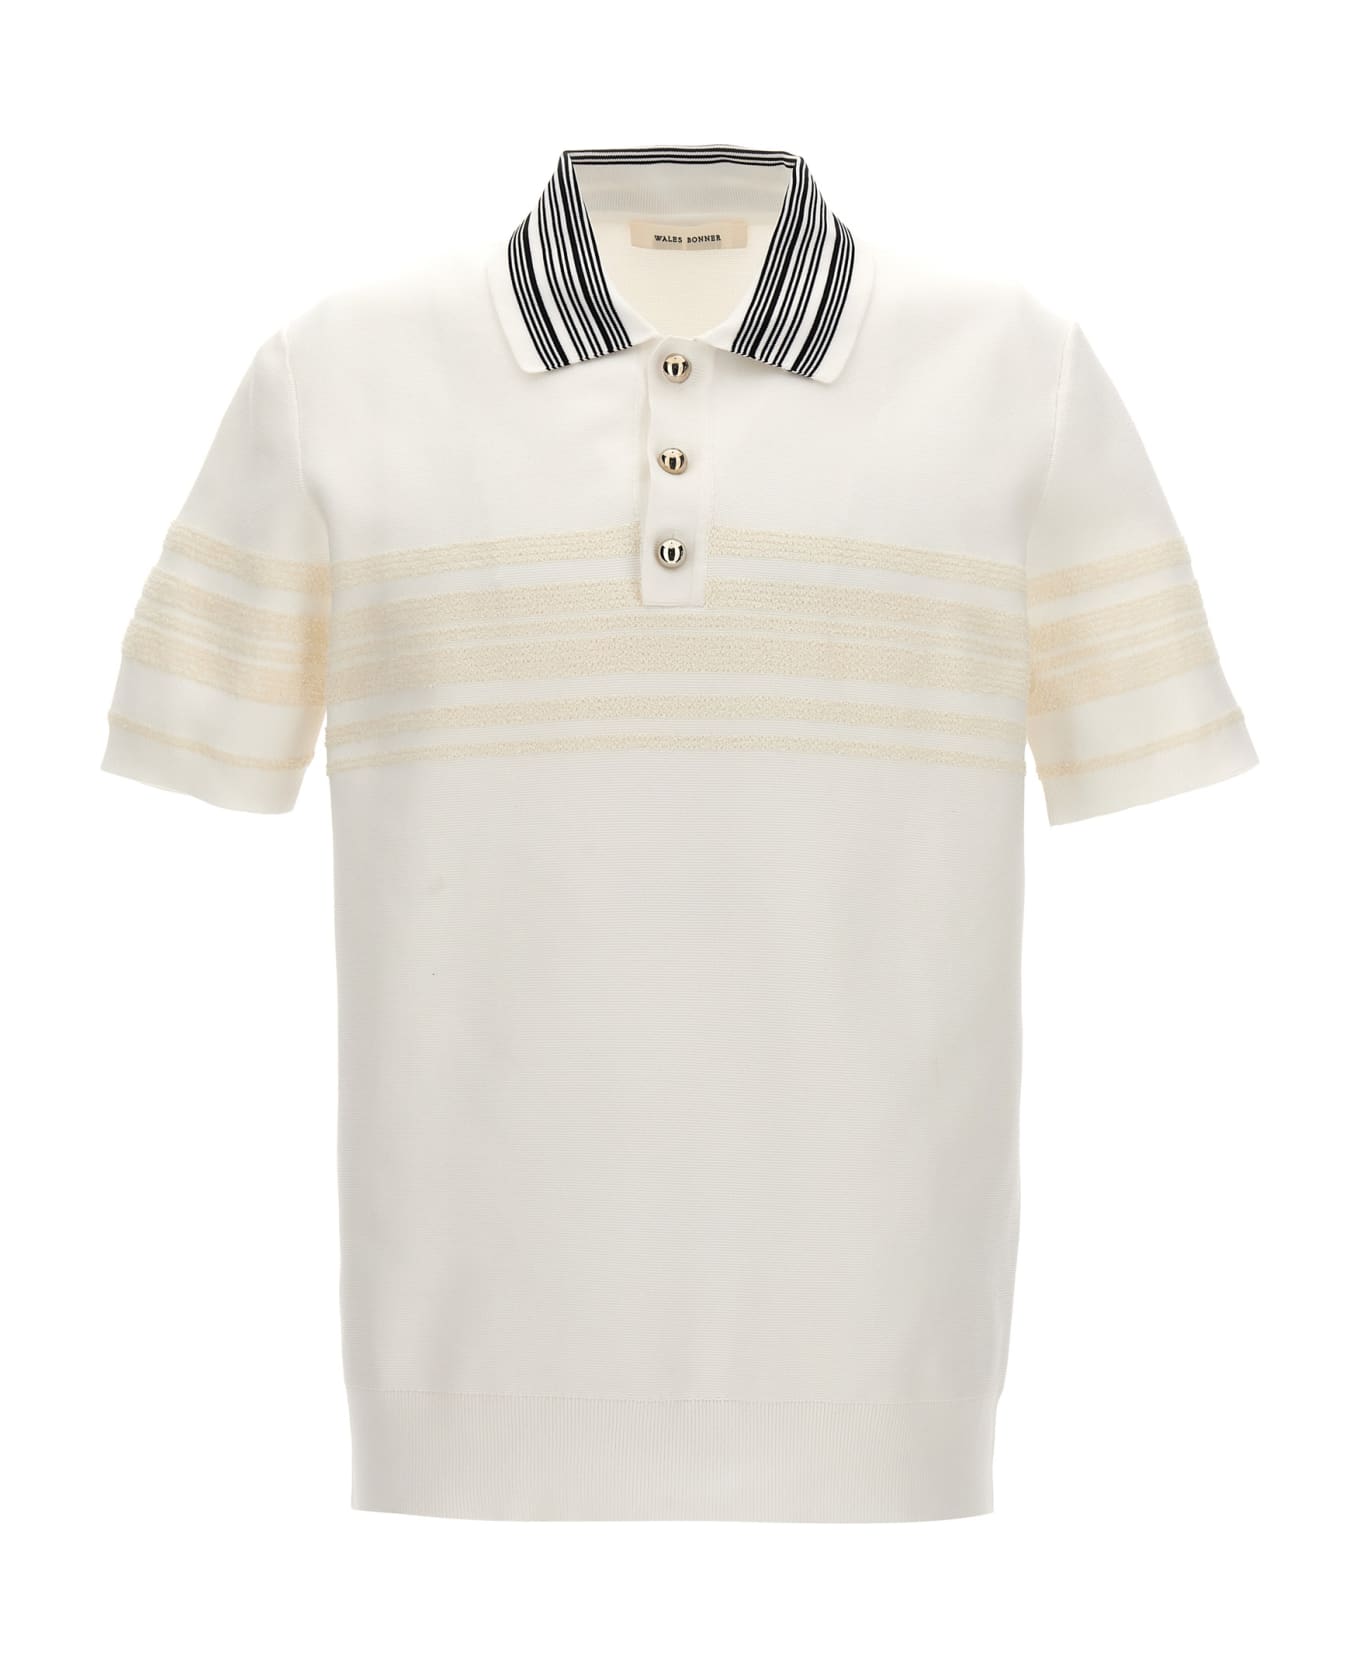 Wales Bonner 'dawn' Polo Shirt - White ポロシャツ